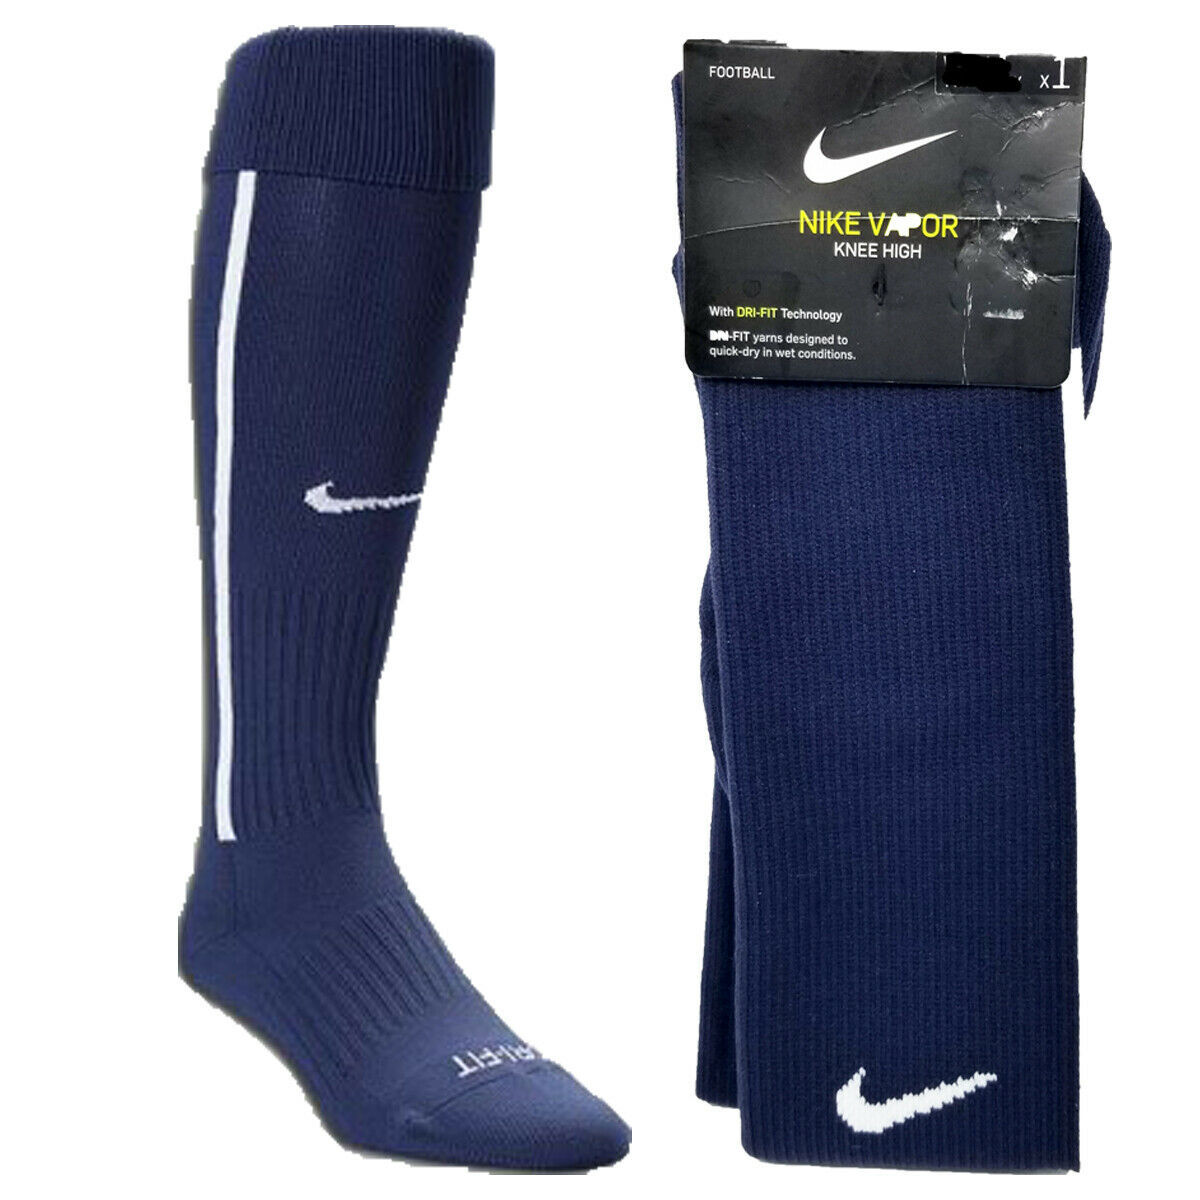 Primary image for Nike Vapor III Knee High Over Calf Soccer Football Socks Navy Blue SX5732-0420